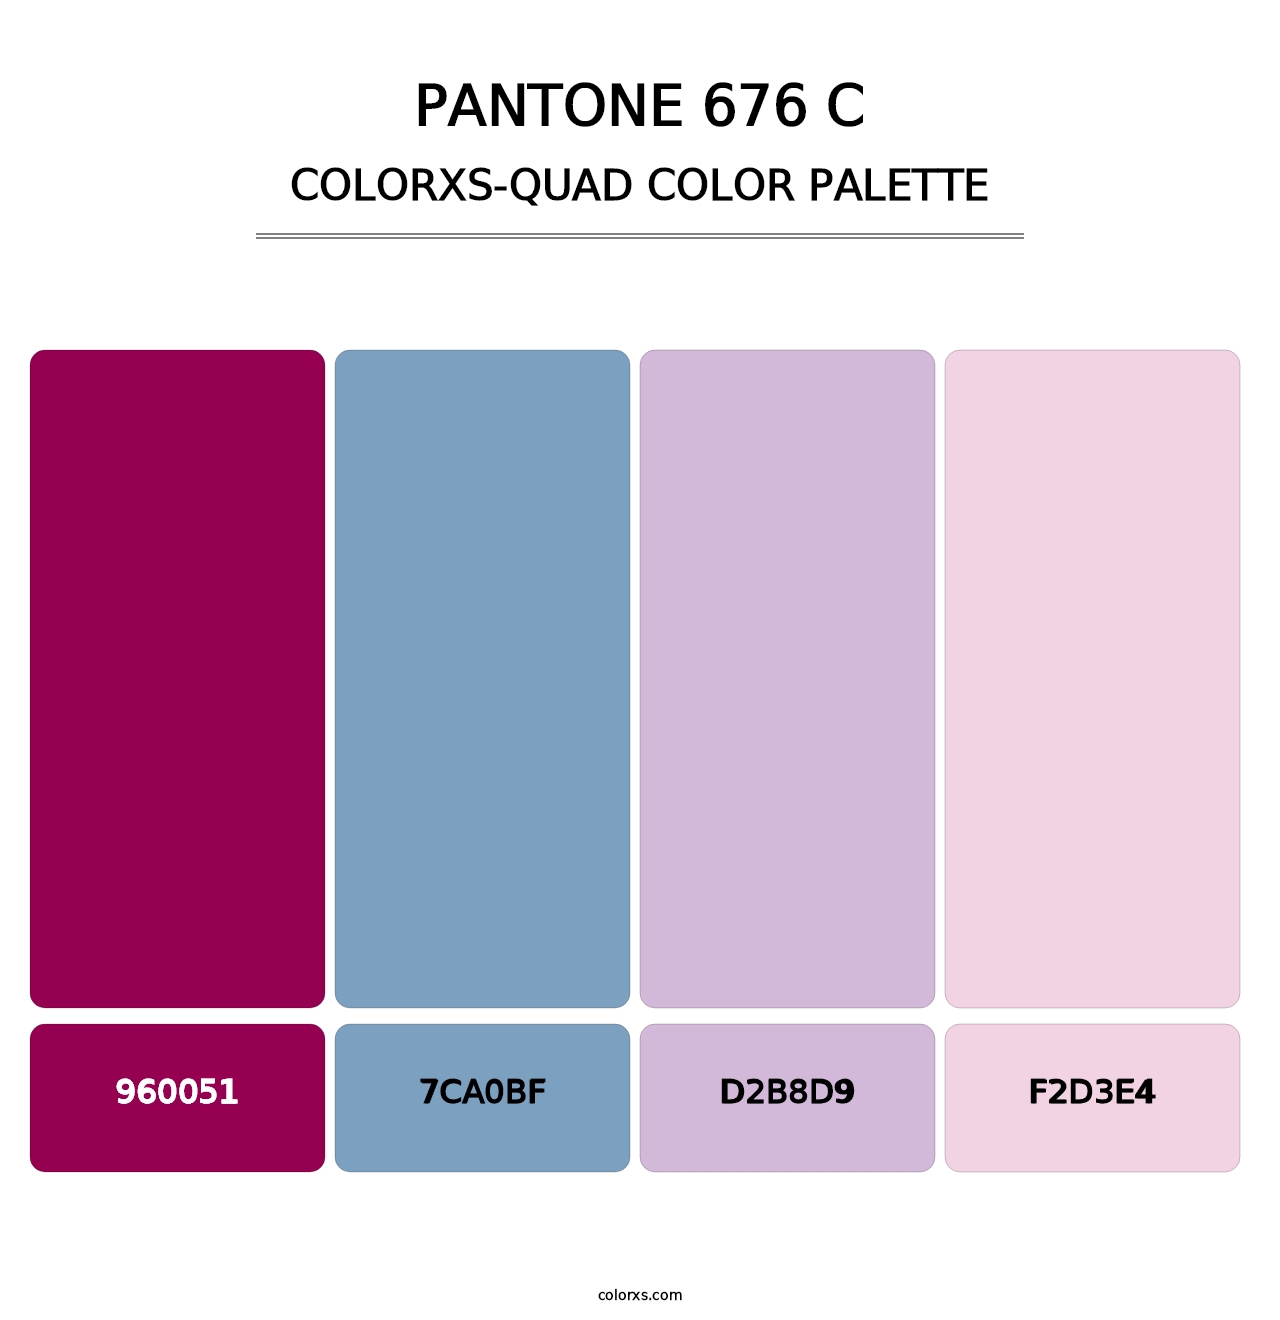 PANTONE 676 C - Colorxs Quad Palette